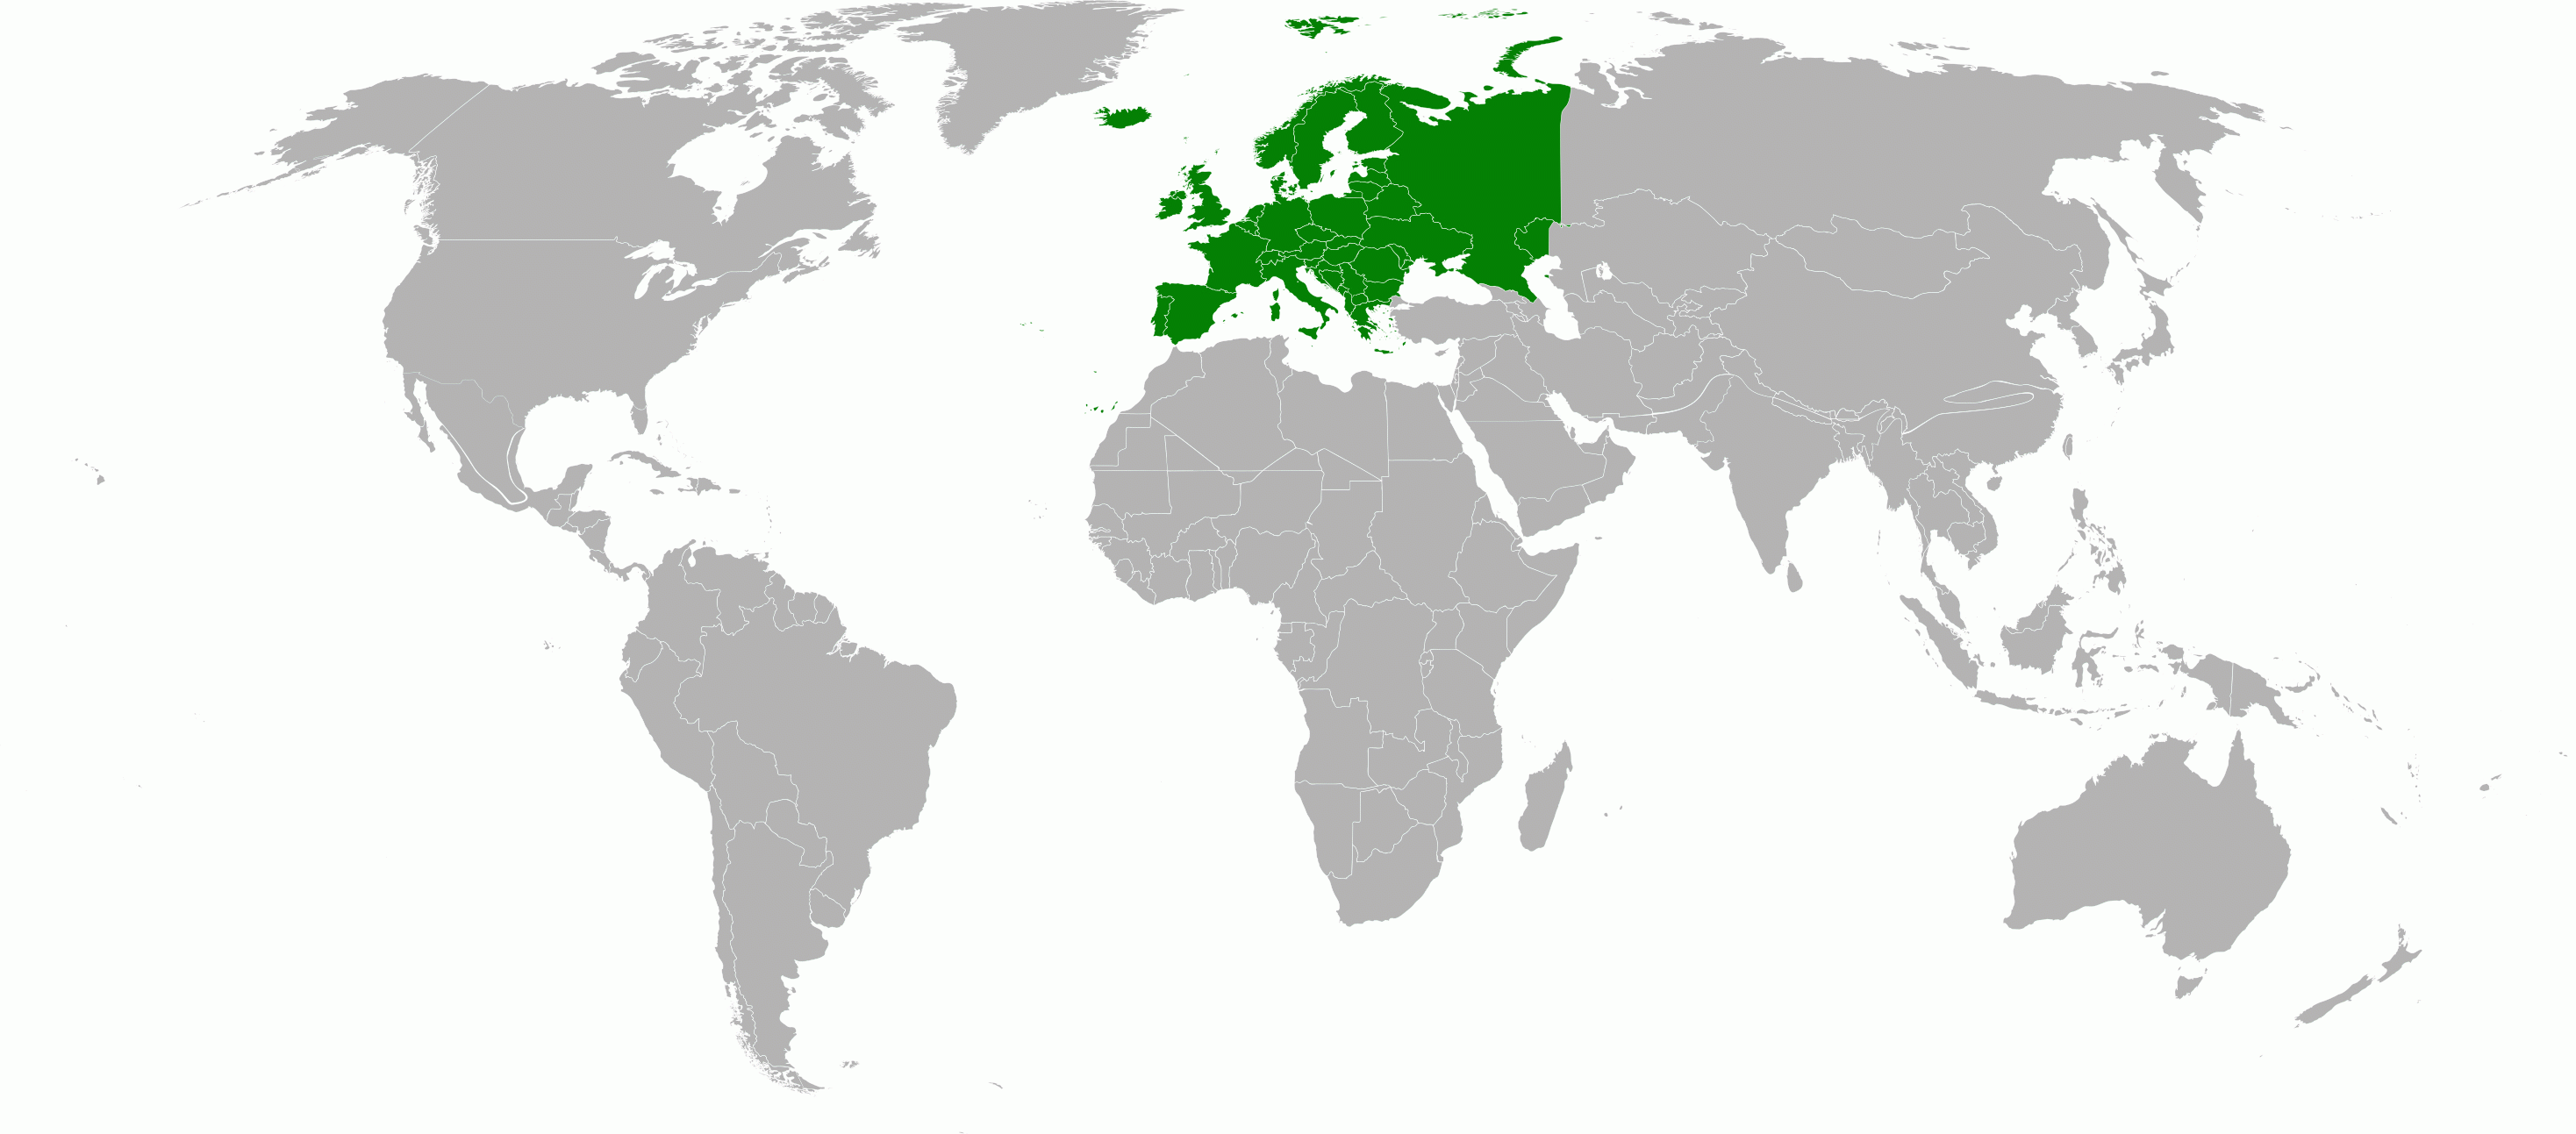 World distribution of Hedychrum gerstaeckeri plicatum